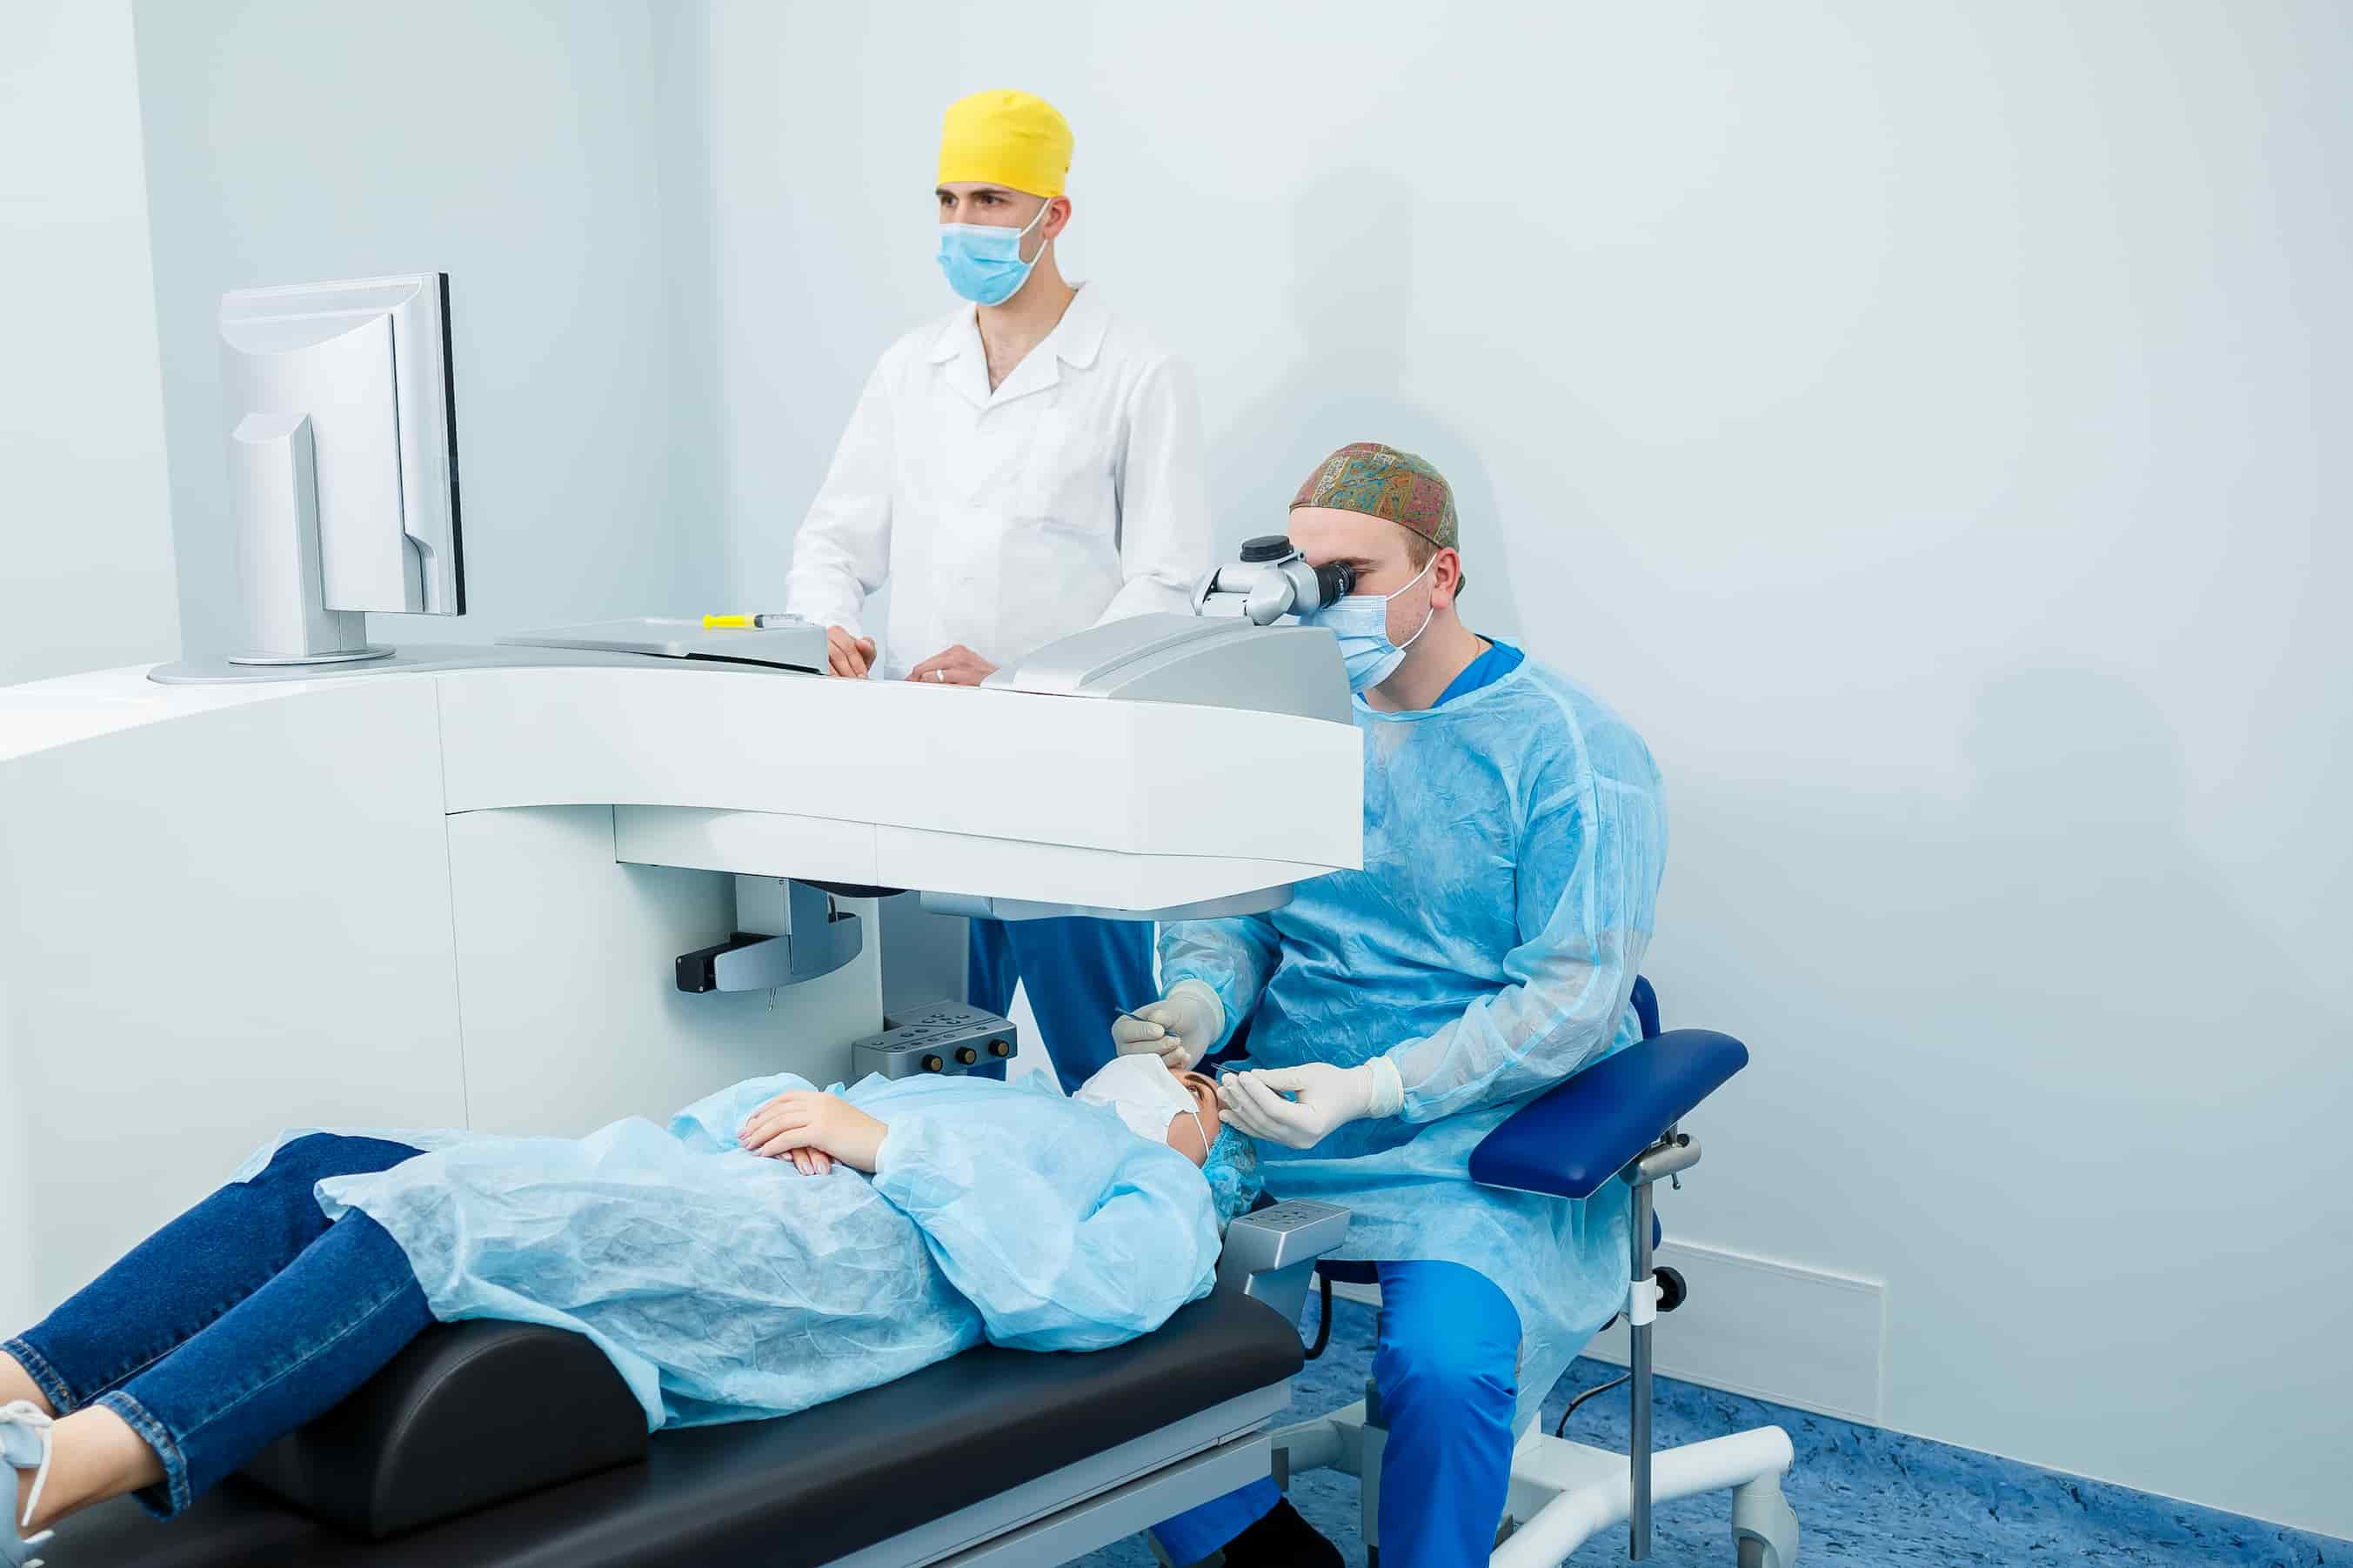 Turkiye extracapsular cataract extraction surgery